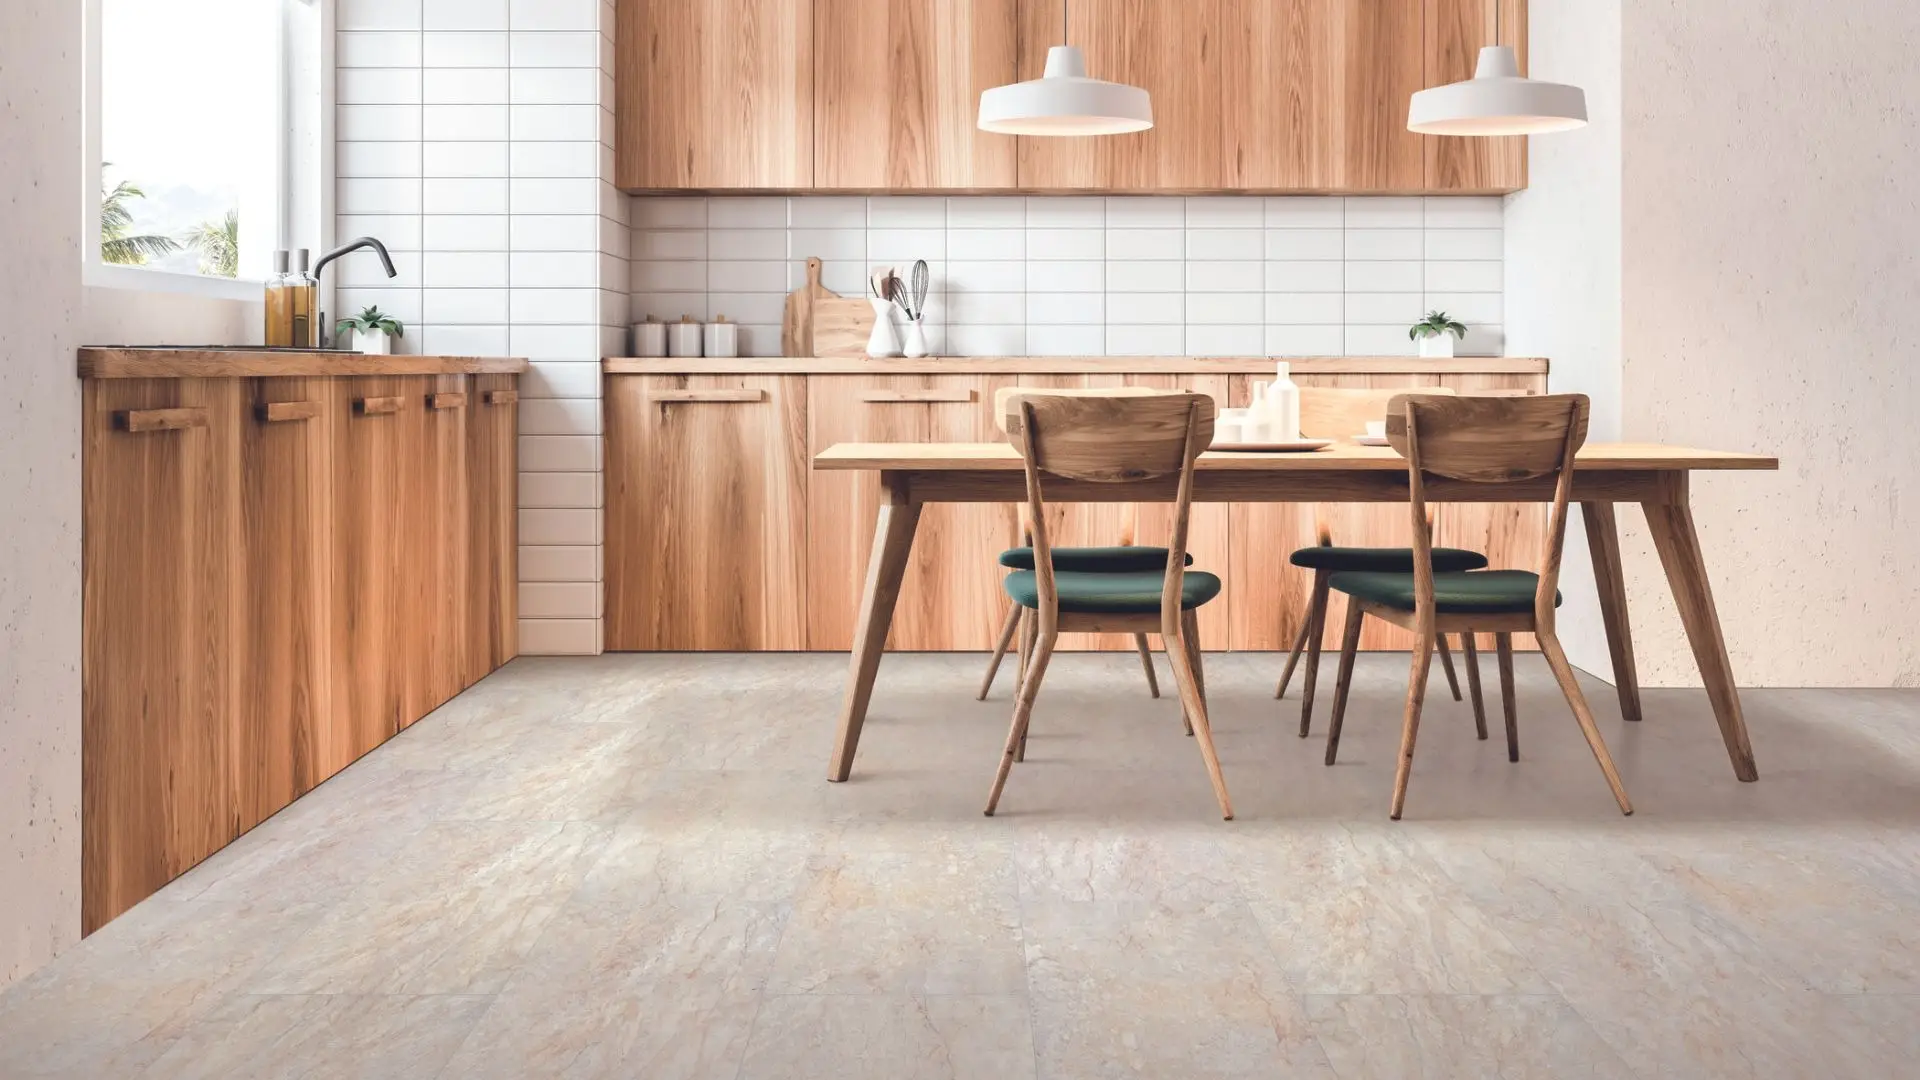 light wood flooring in modern kitchen